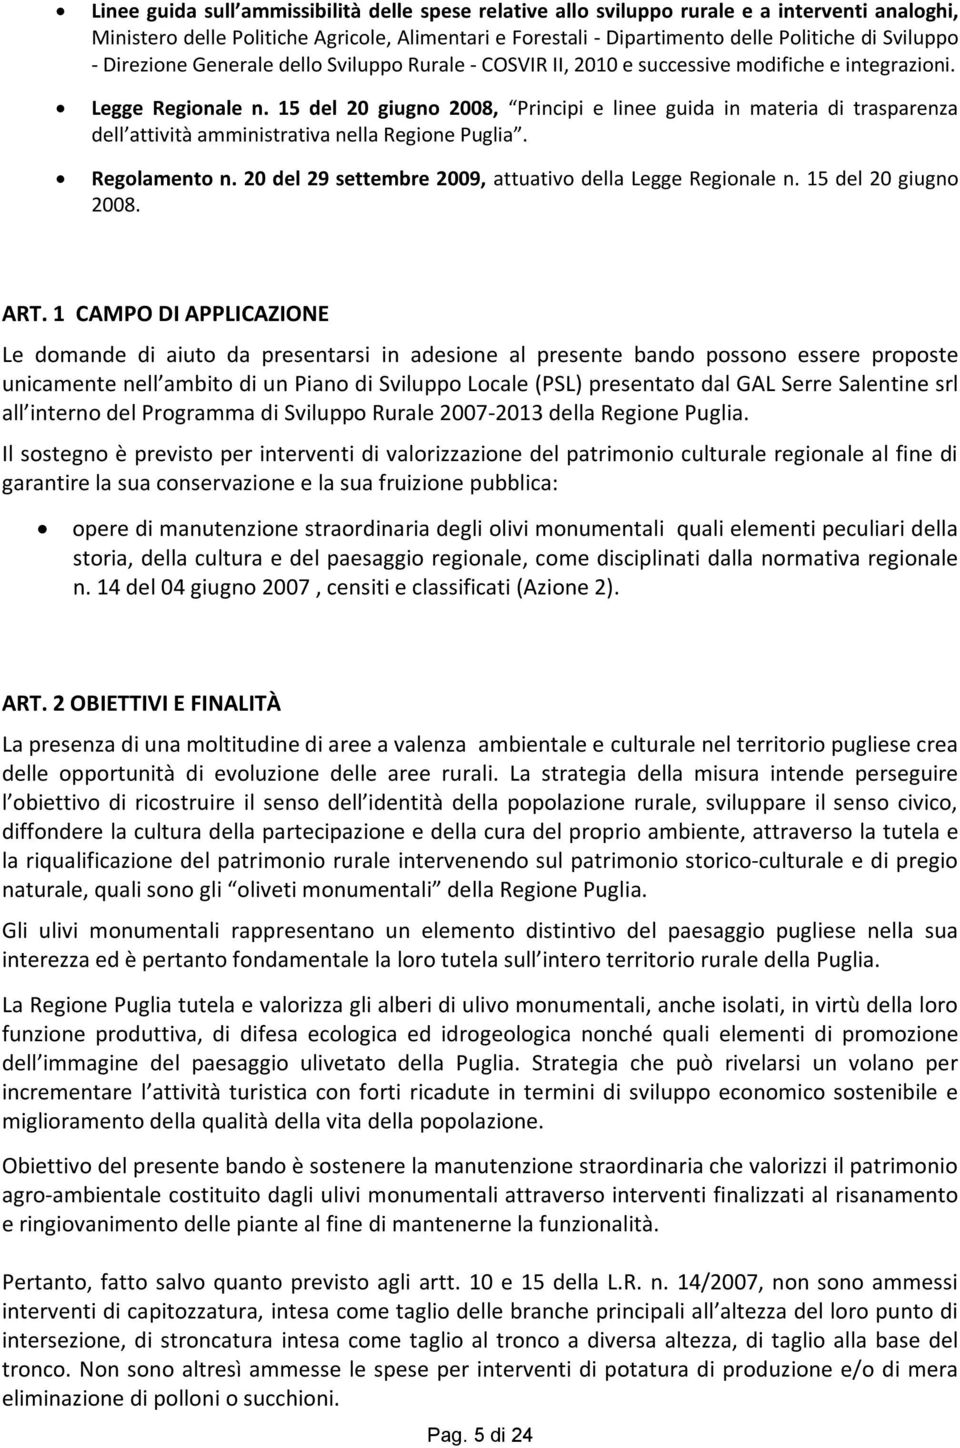 15 del 20 giugno 2008, Principi e linee guida in materia di trasparenza dell attività amministrativa nella Regione Puglia. Regolamento n. 20 del 29 settembre 2009, attuativo della Legge Regionale n.